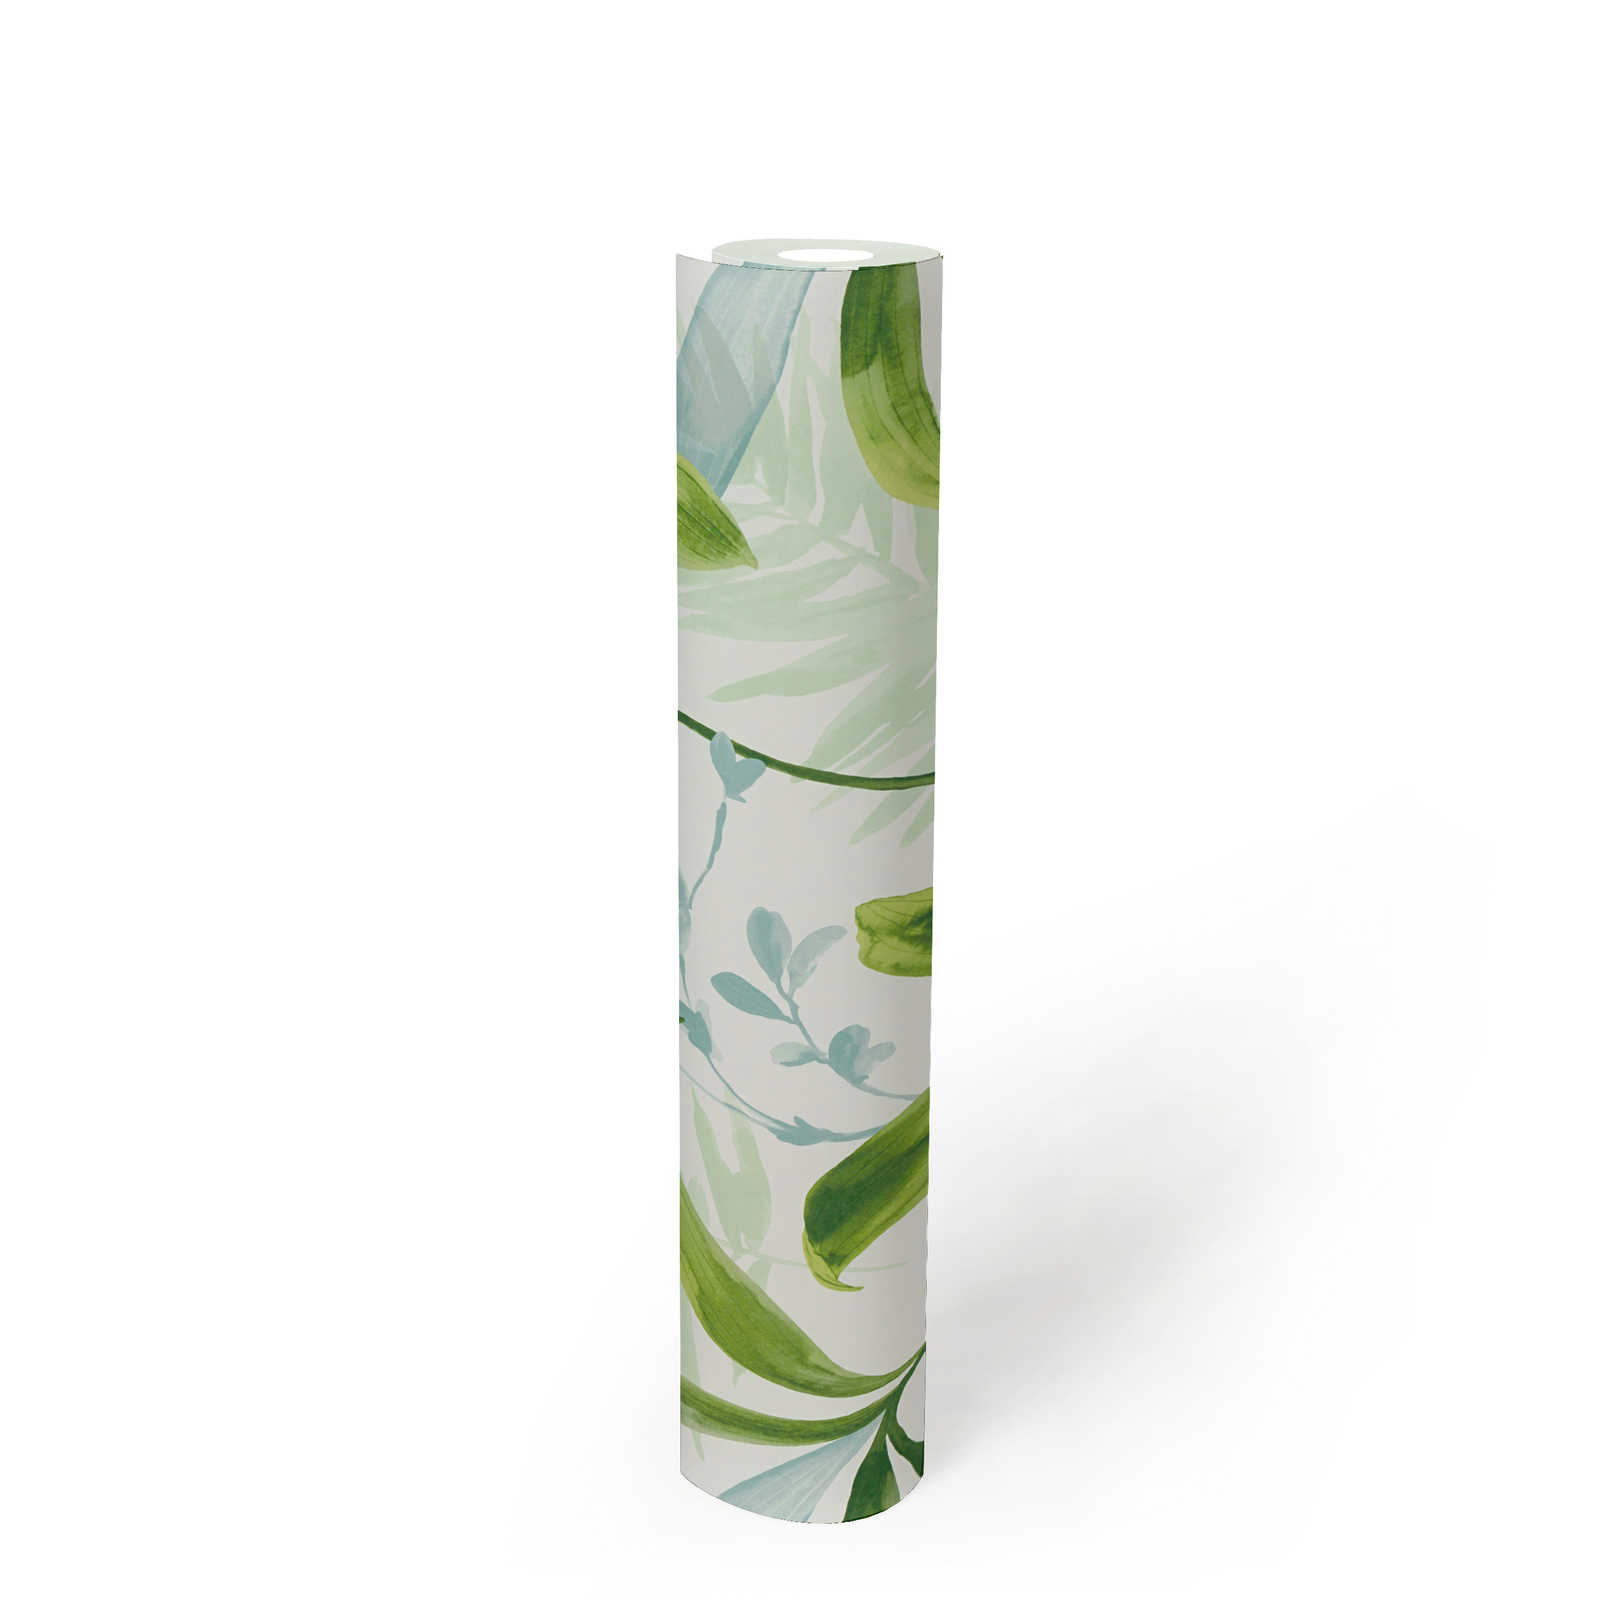             Carta da parati in tessuto non tessuto foglie verdi in stile acquerello - verde, bianco
        